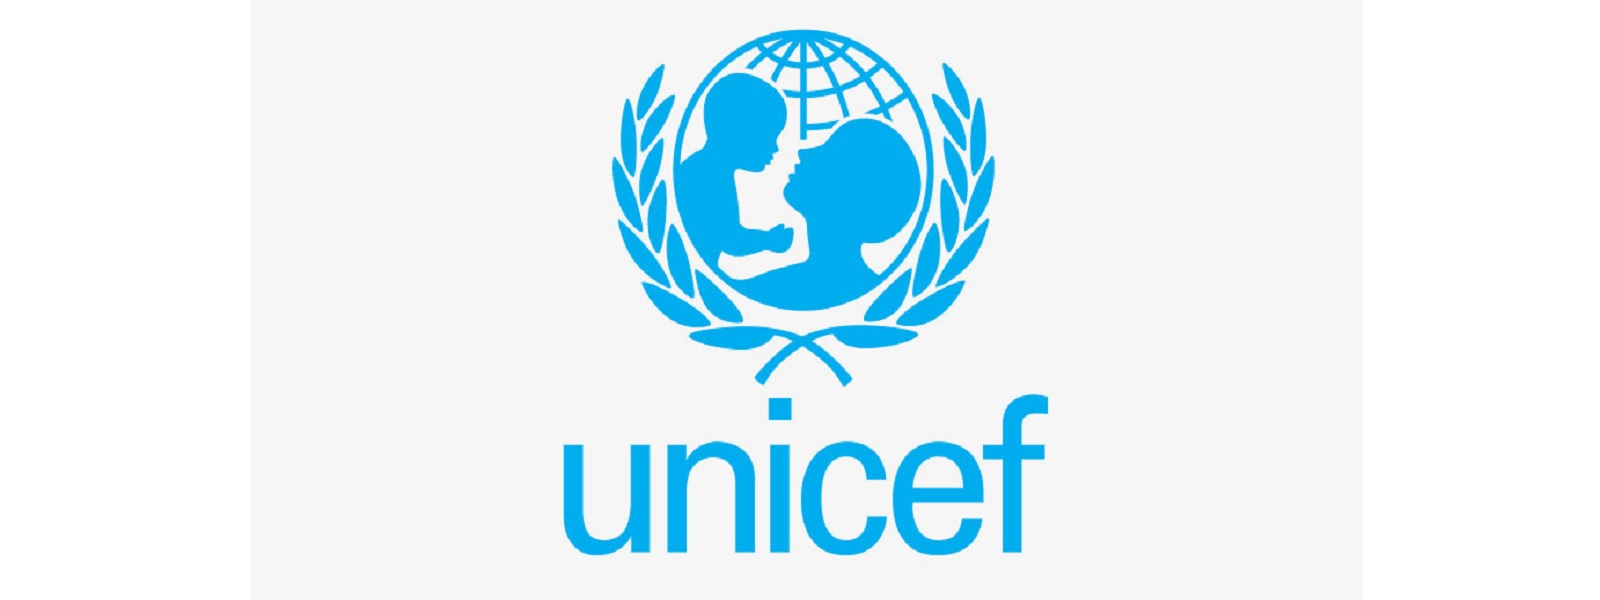 இலங்கையில் 62 இலட்சம் பேருக்கு மனிதாபிமான உதவிகள் தேவை: UNICEF அறிக்கை